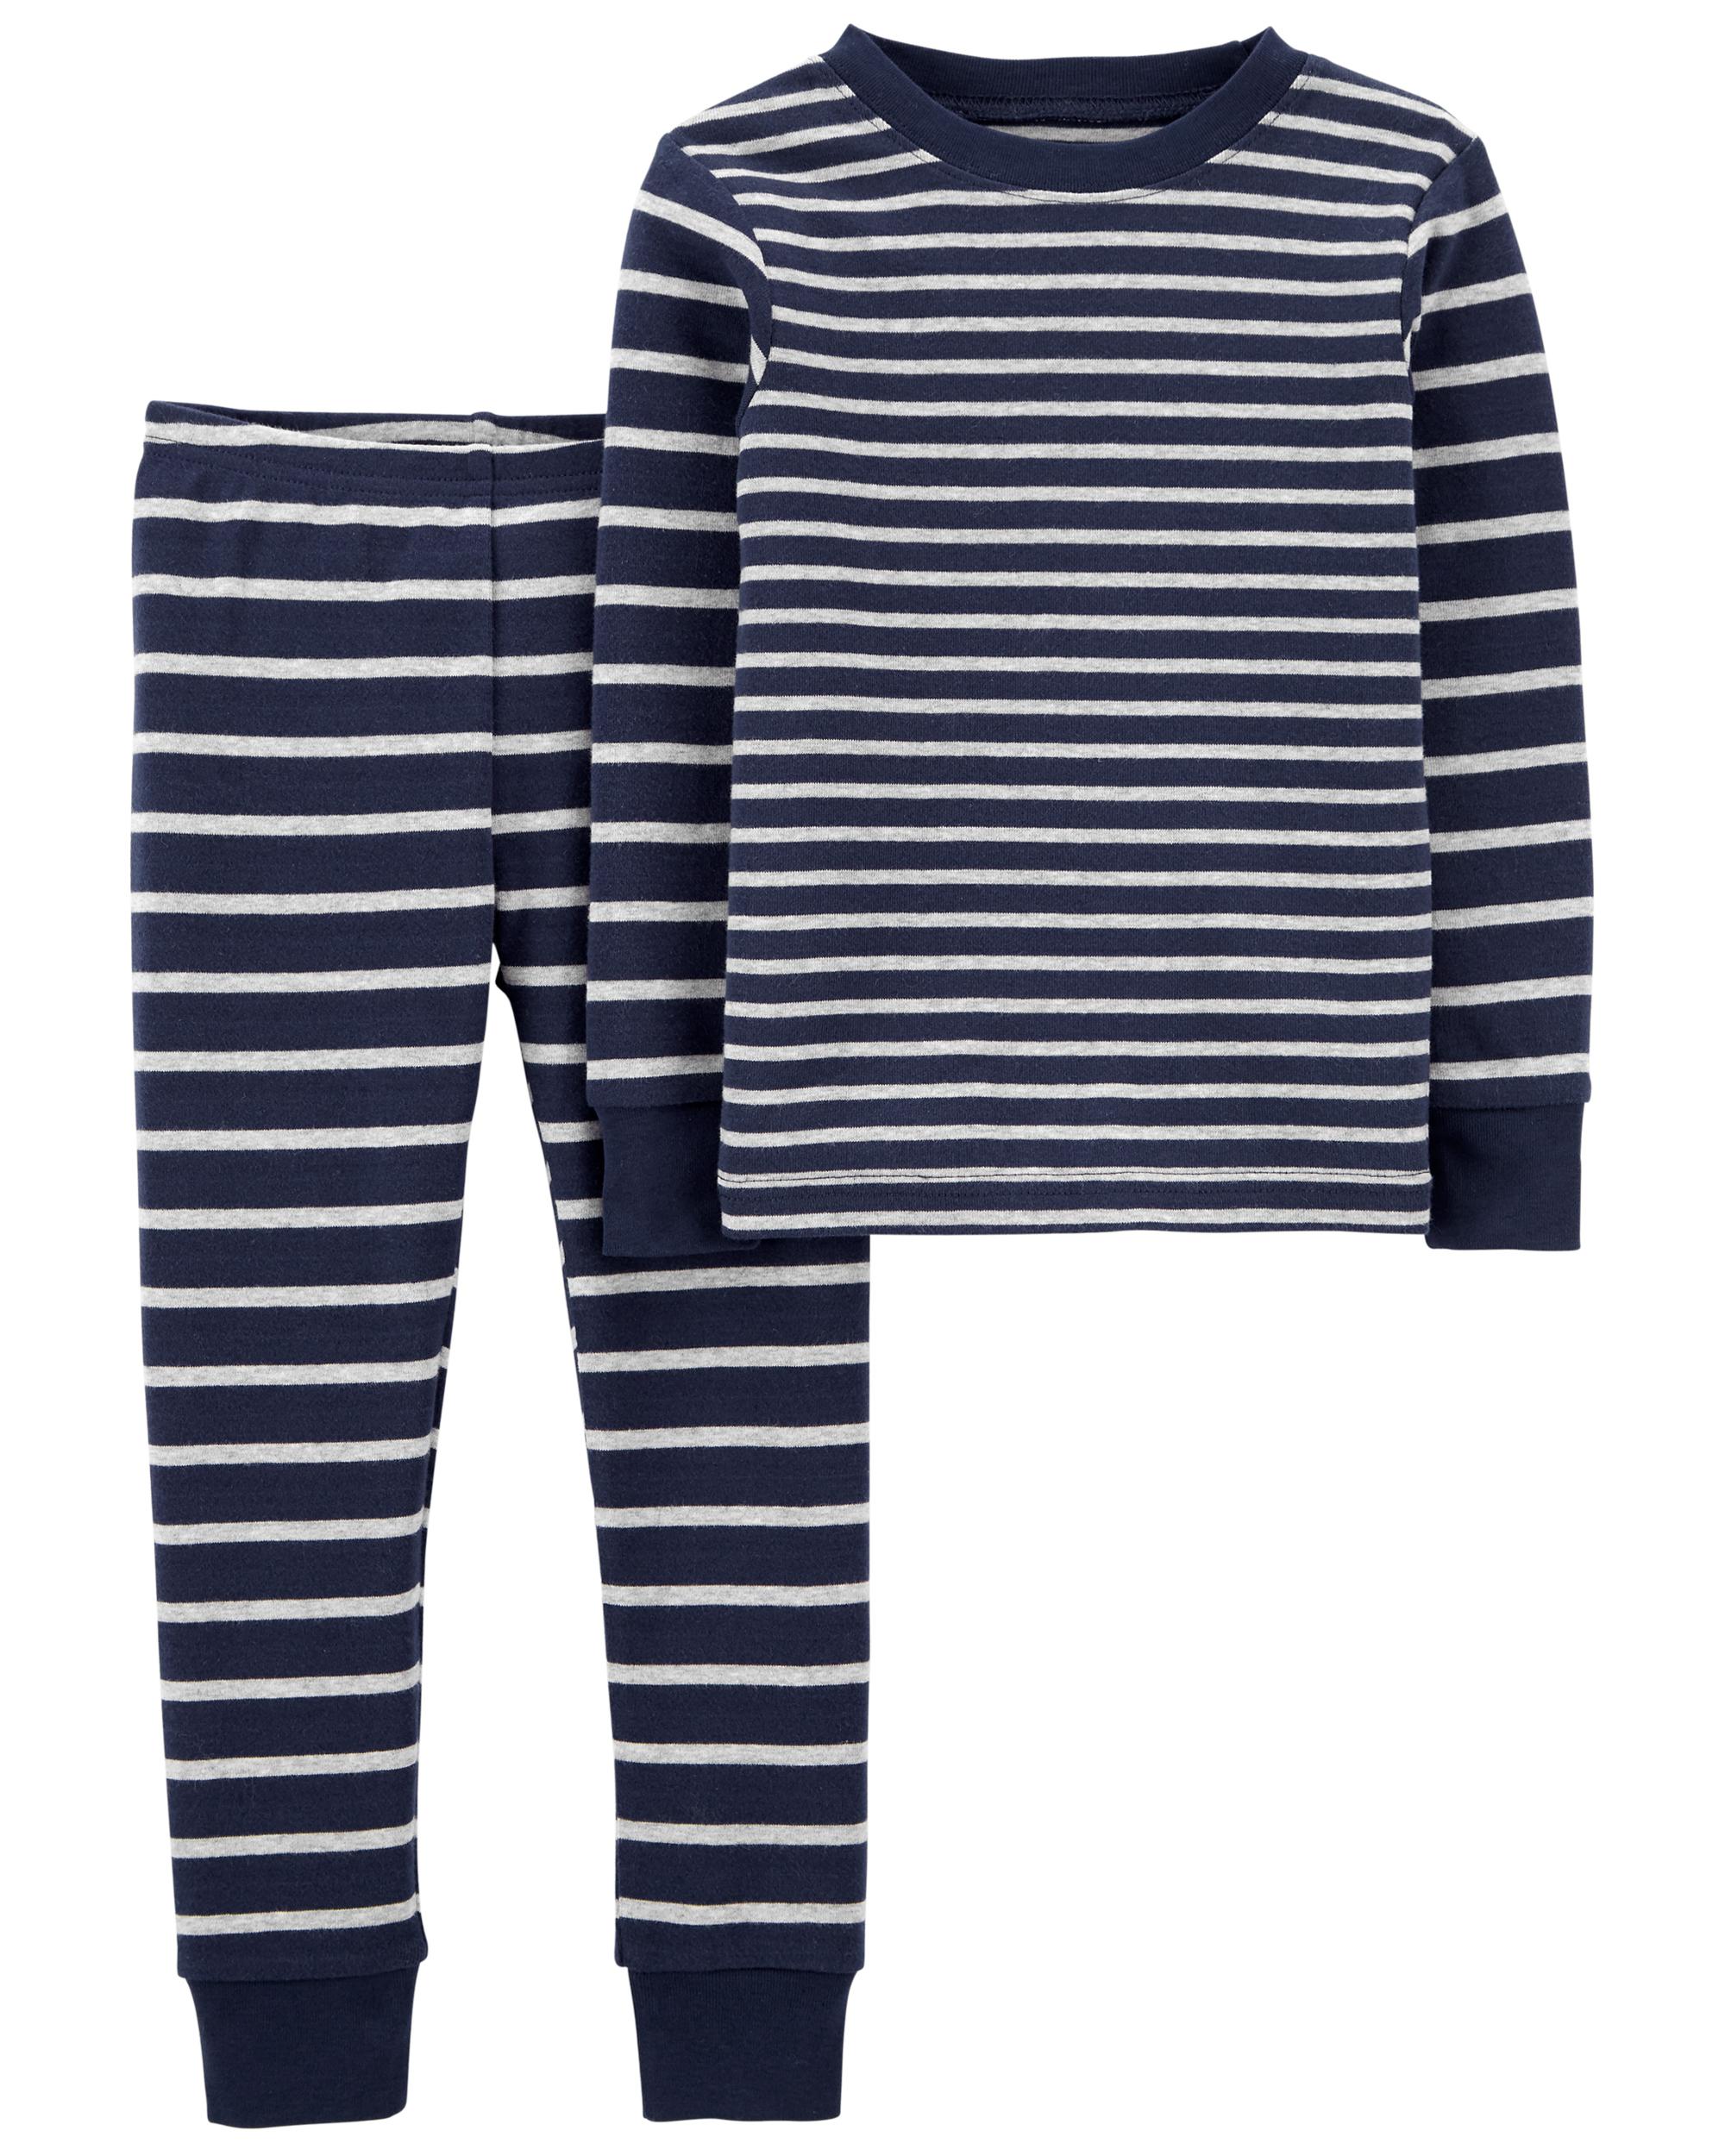 Toddler 2-Piece Striped 100% Snug Fit Cotton Pajamas